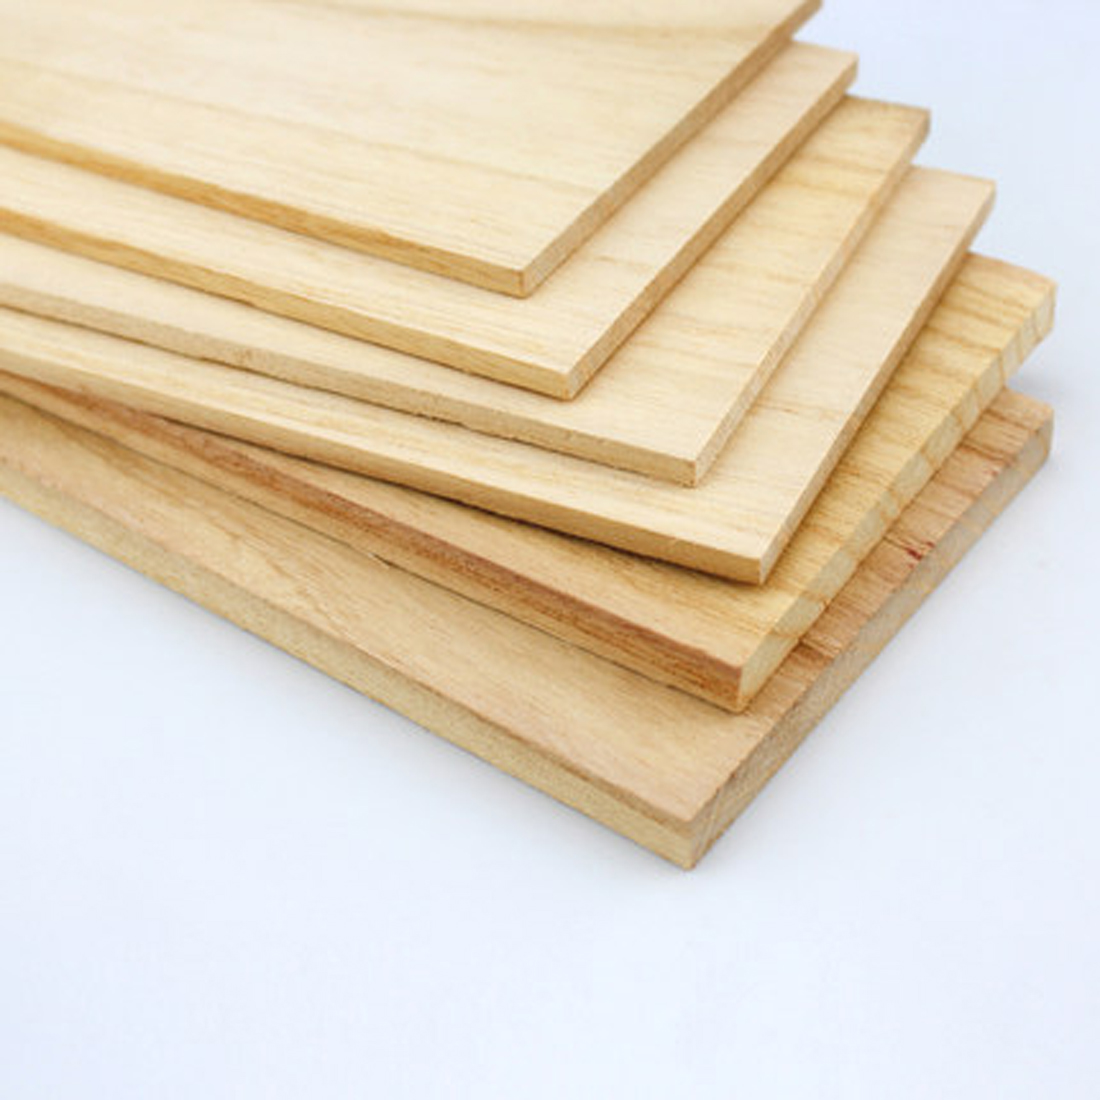 实木板材真的好吗 实木板材原木哪里买便宜价格